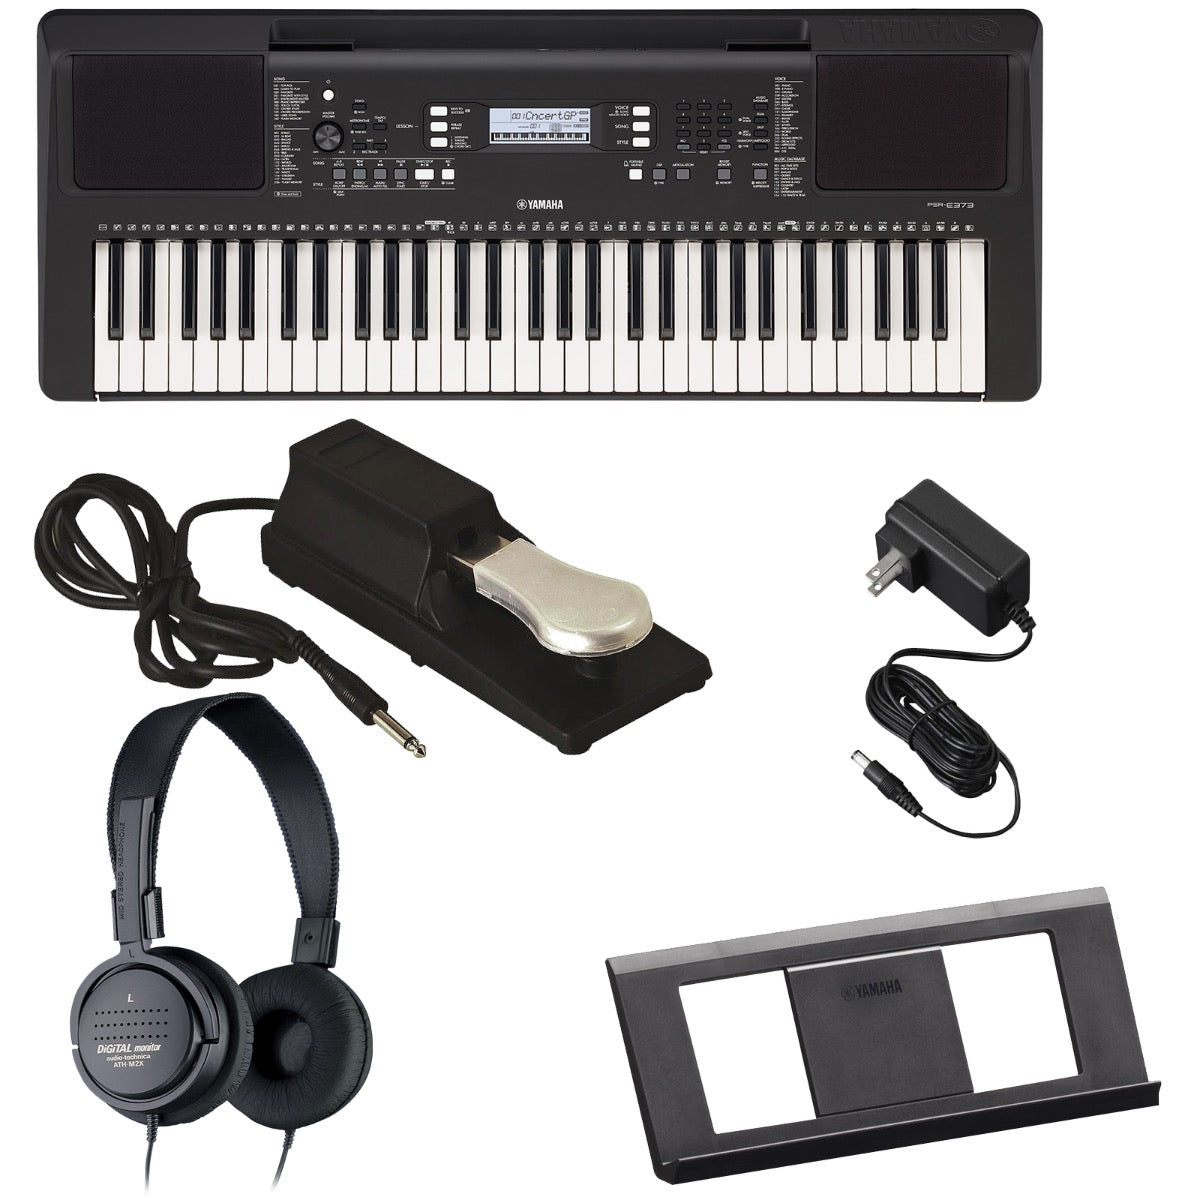 Yamaha Portable Keyboard - PSR-E373